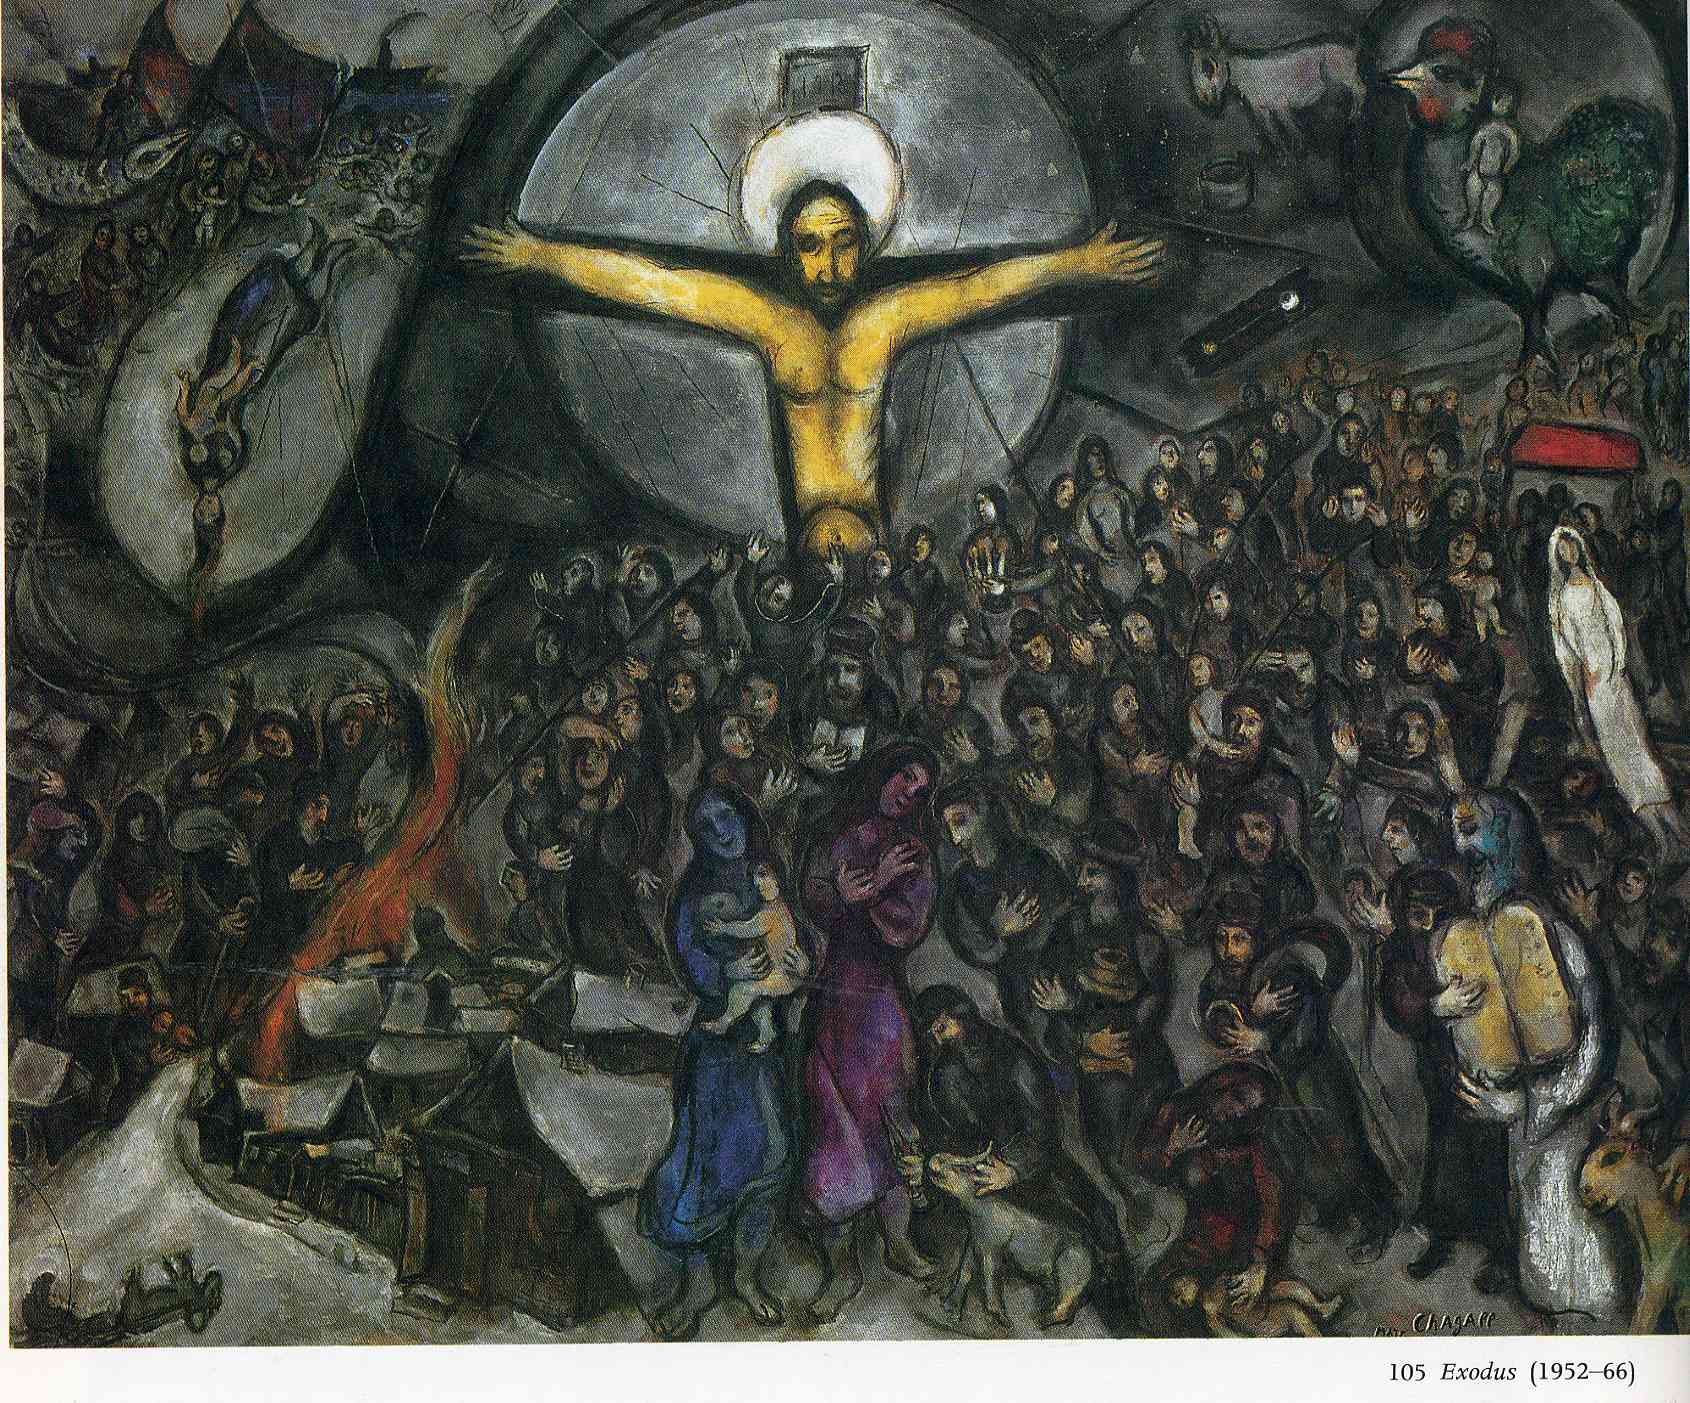 دانلود عکس اثر مارک شاگال از صلیب عیسی مسیح به صورت رایگان 